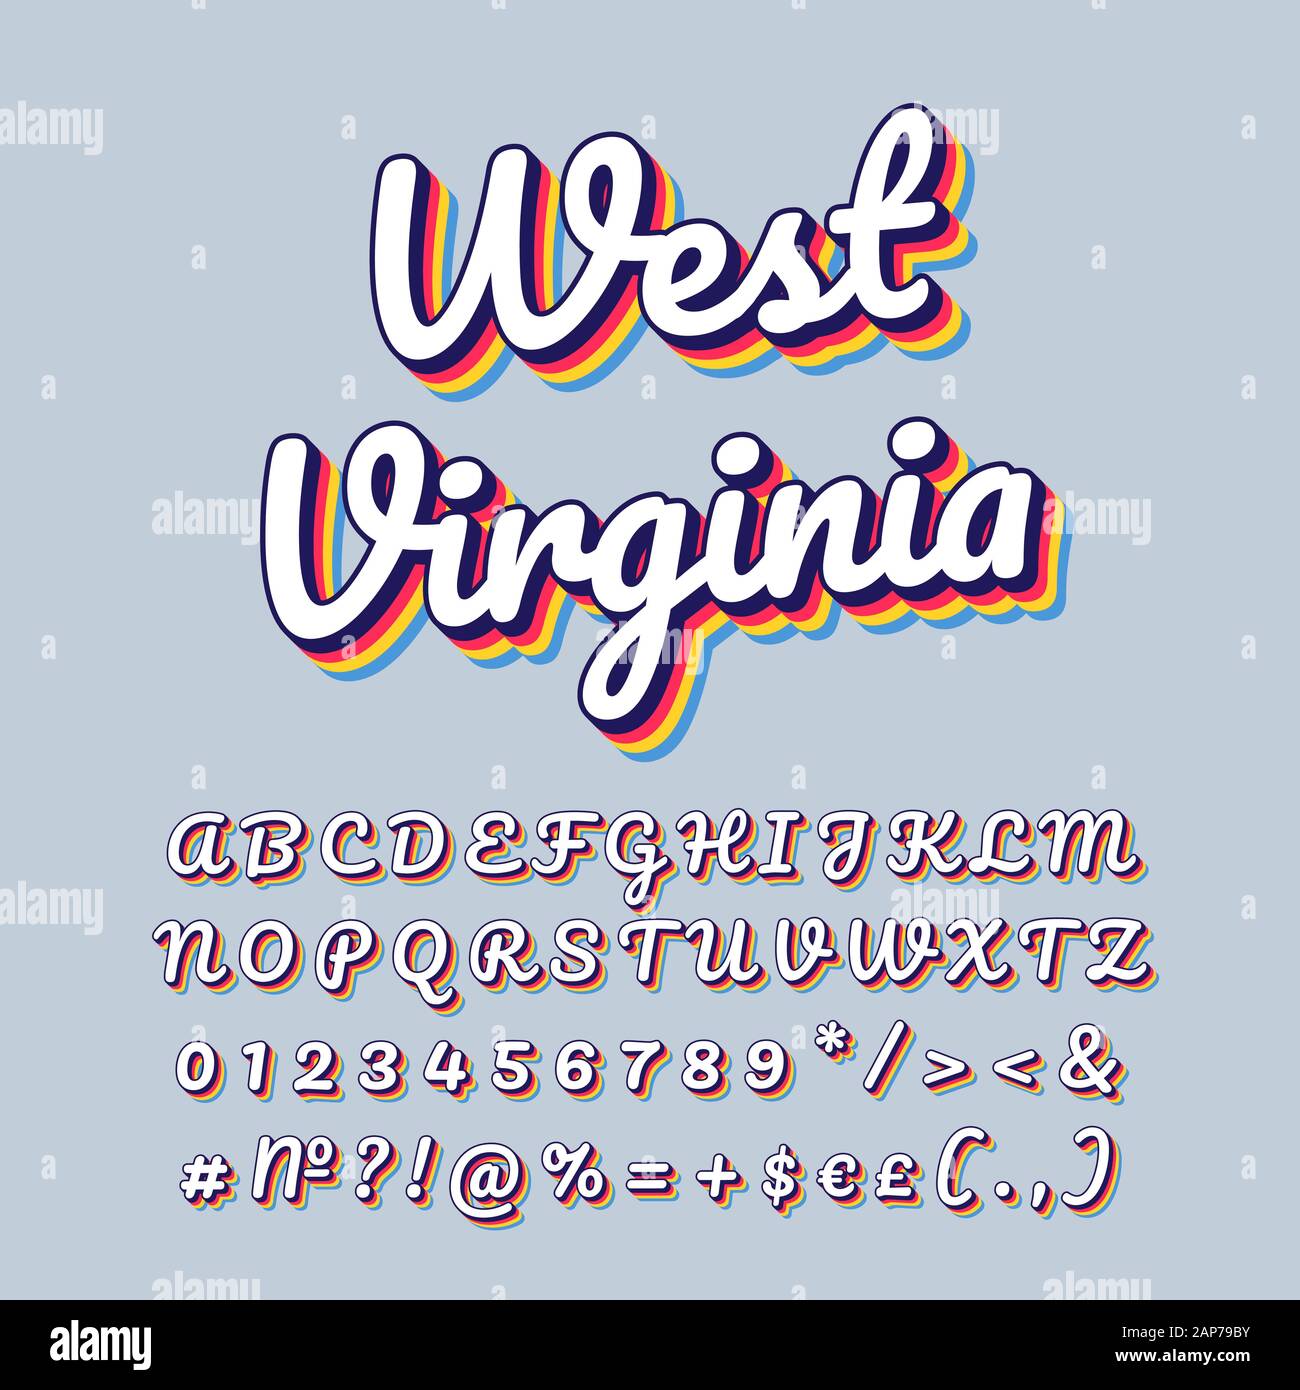 West Virginia vintage 3d Vektor Schriftzug. Retro bold Font, Schrift. Pop Art stilisierten Text. Old School Style Buchstaben, Zahlen, Symbolen pack. 90 s Poste Stock Vektor